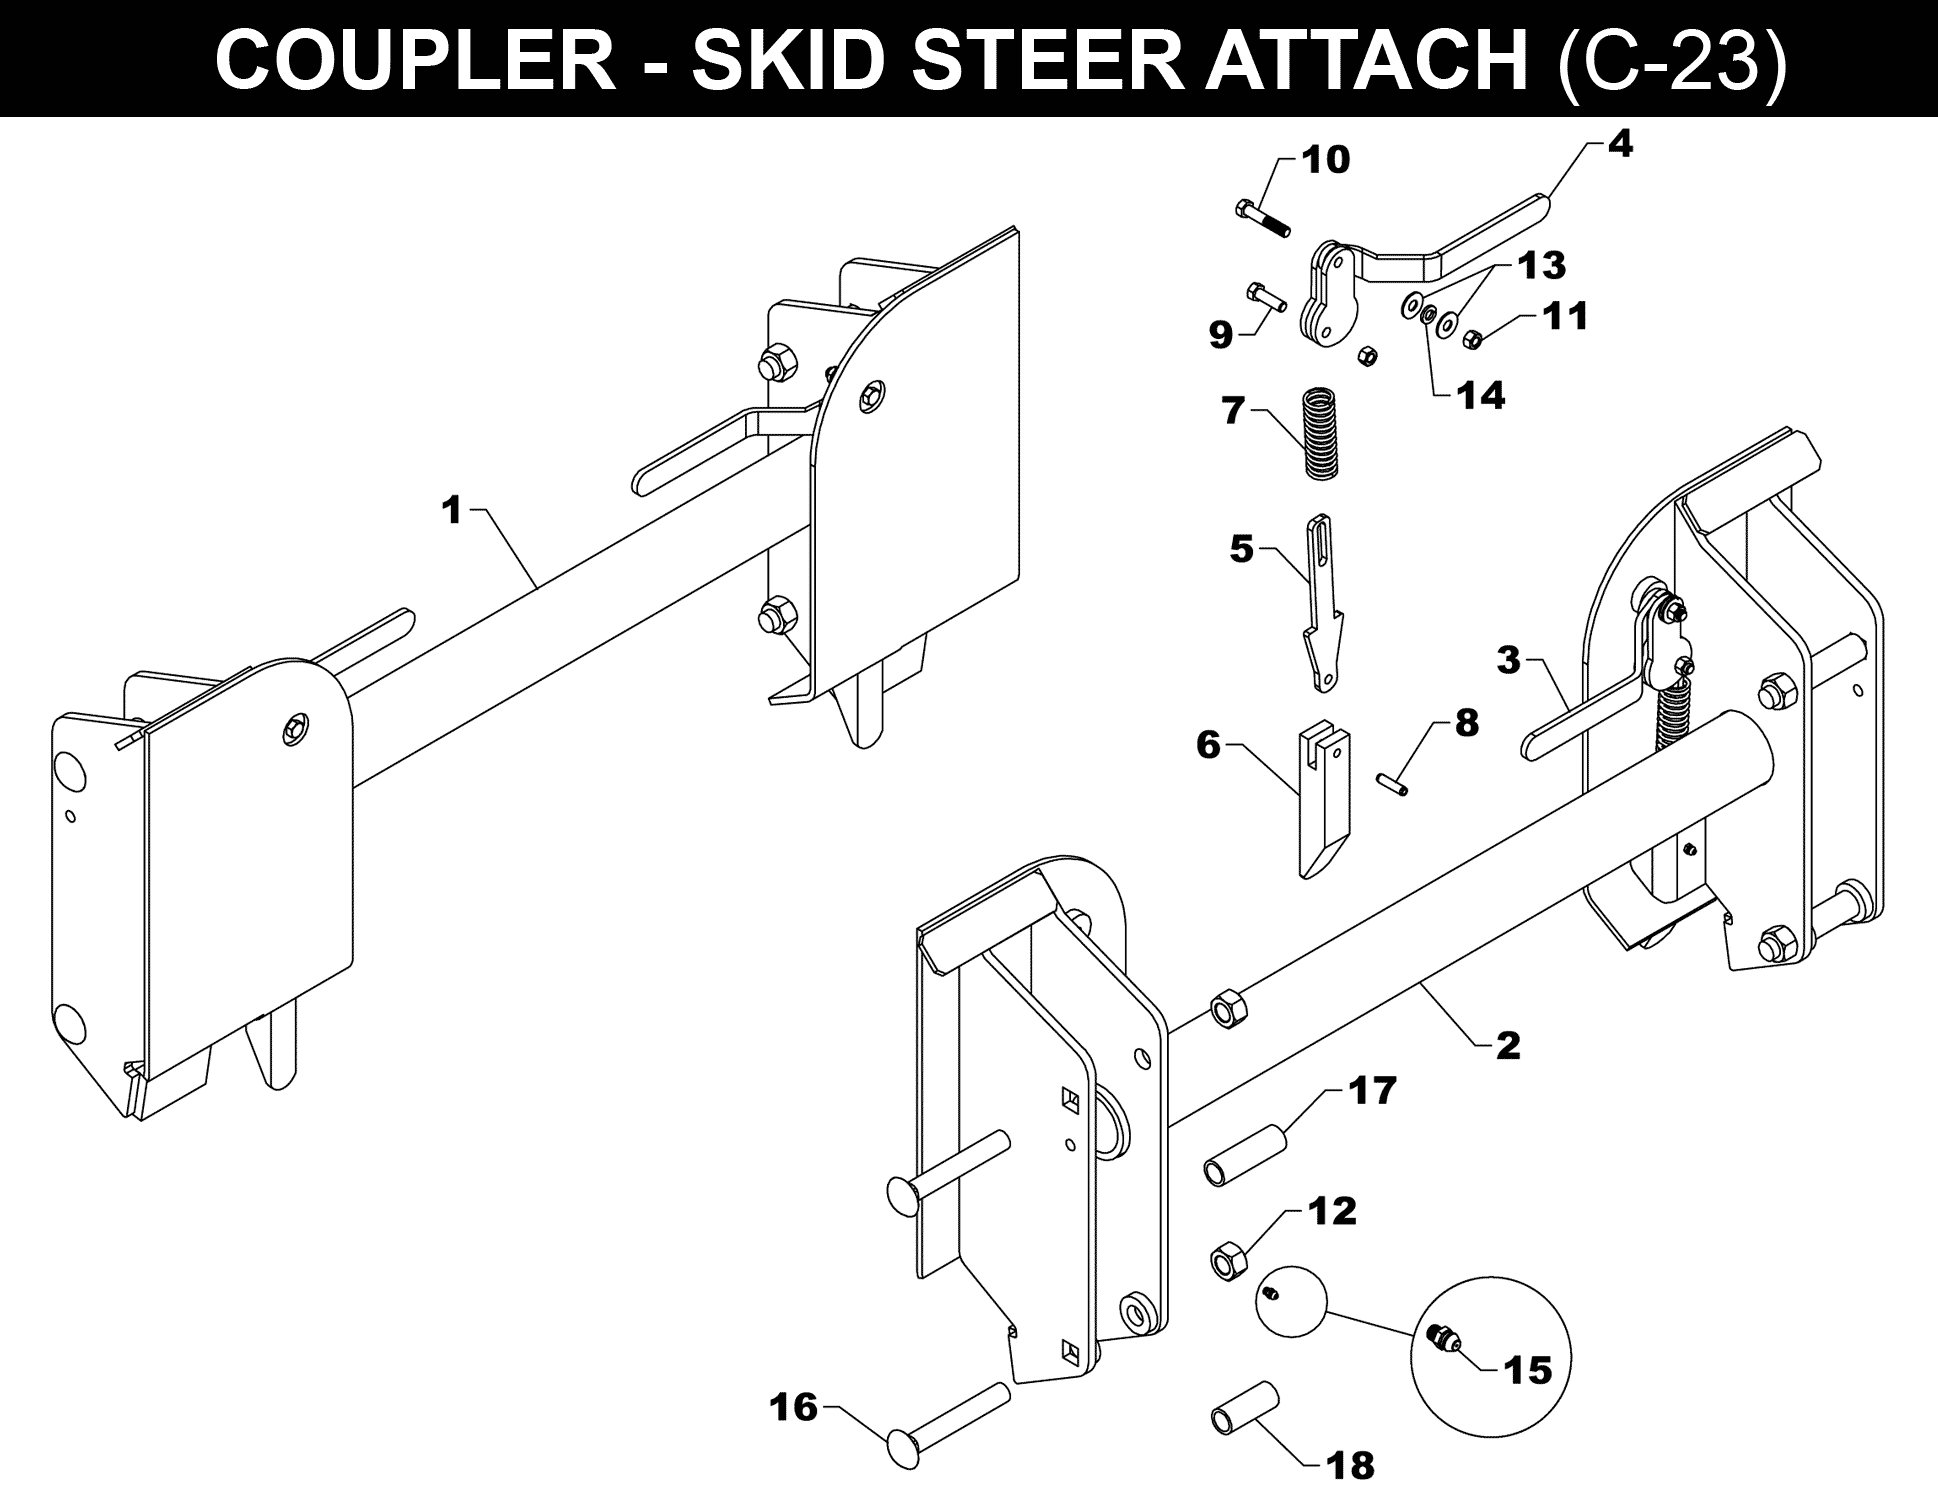 OPTIONAL SKID STEER COUPLER - C-23